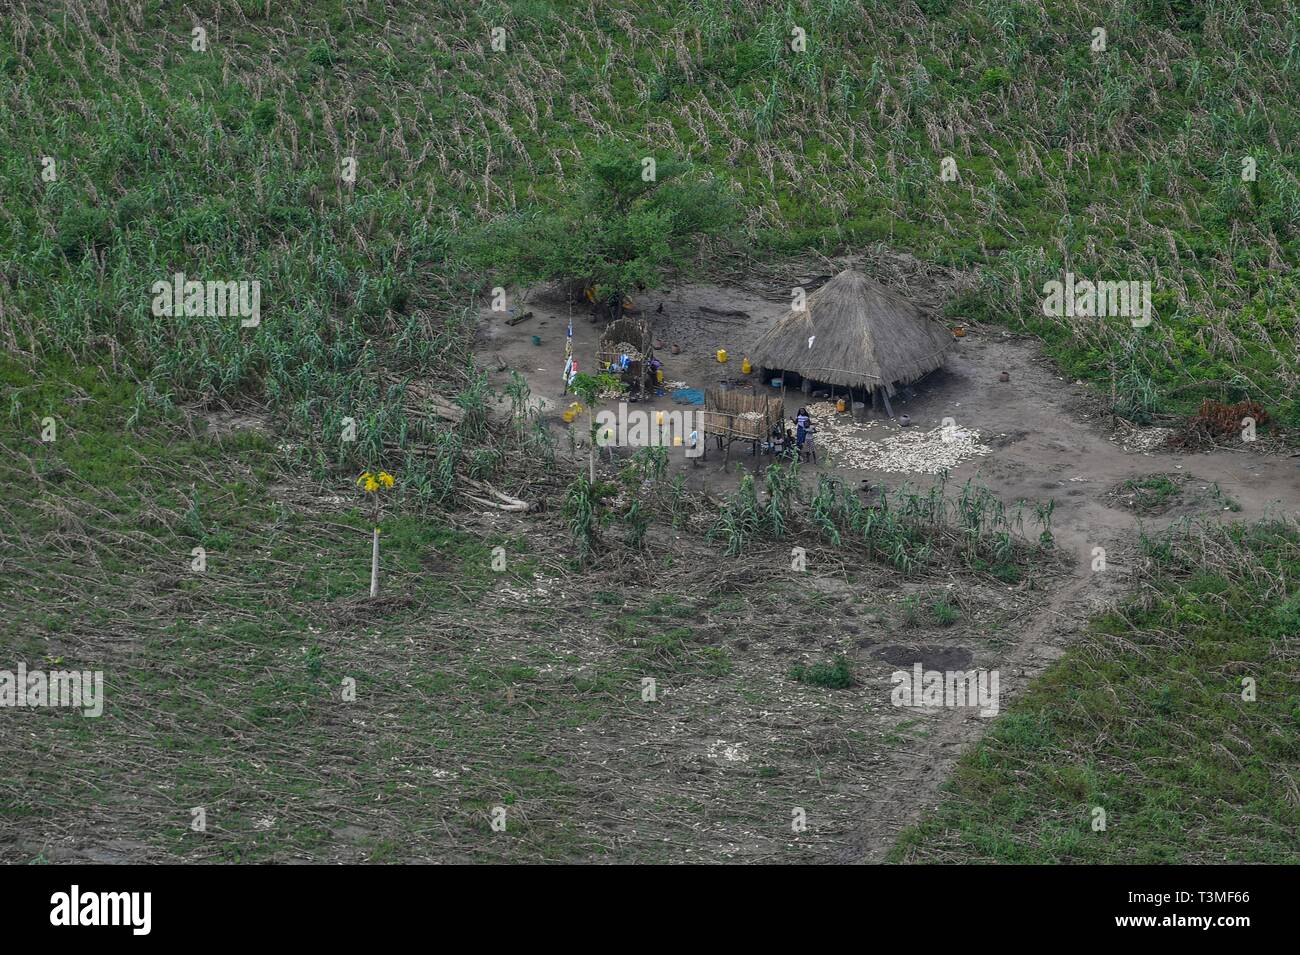 Une cabane de chaume traditionnels entre les terres agricoles en ruines à la suite de l'Idai Cyclone massive le 8 avril 2019 près de Bebedo, au Mozambique. Le Programme alimentaire mondial, avec l'aide de l'US Air Force est de transporter du matériel de secours d'urgence pour aider la région dévastée. Banque D'Images